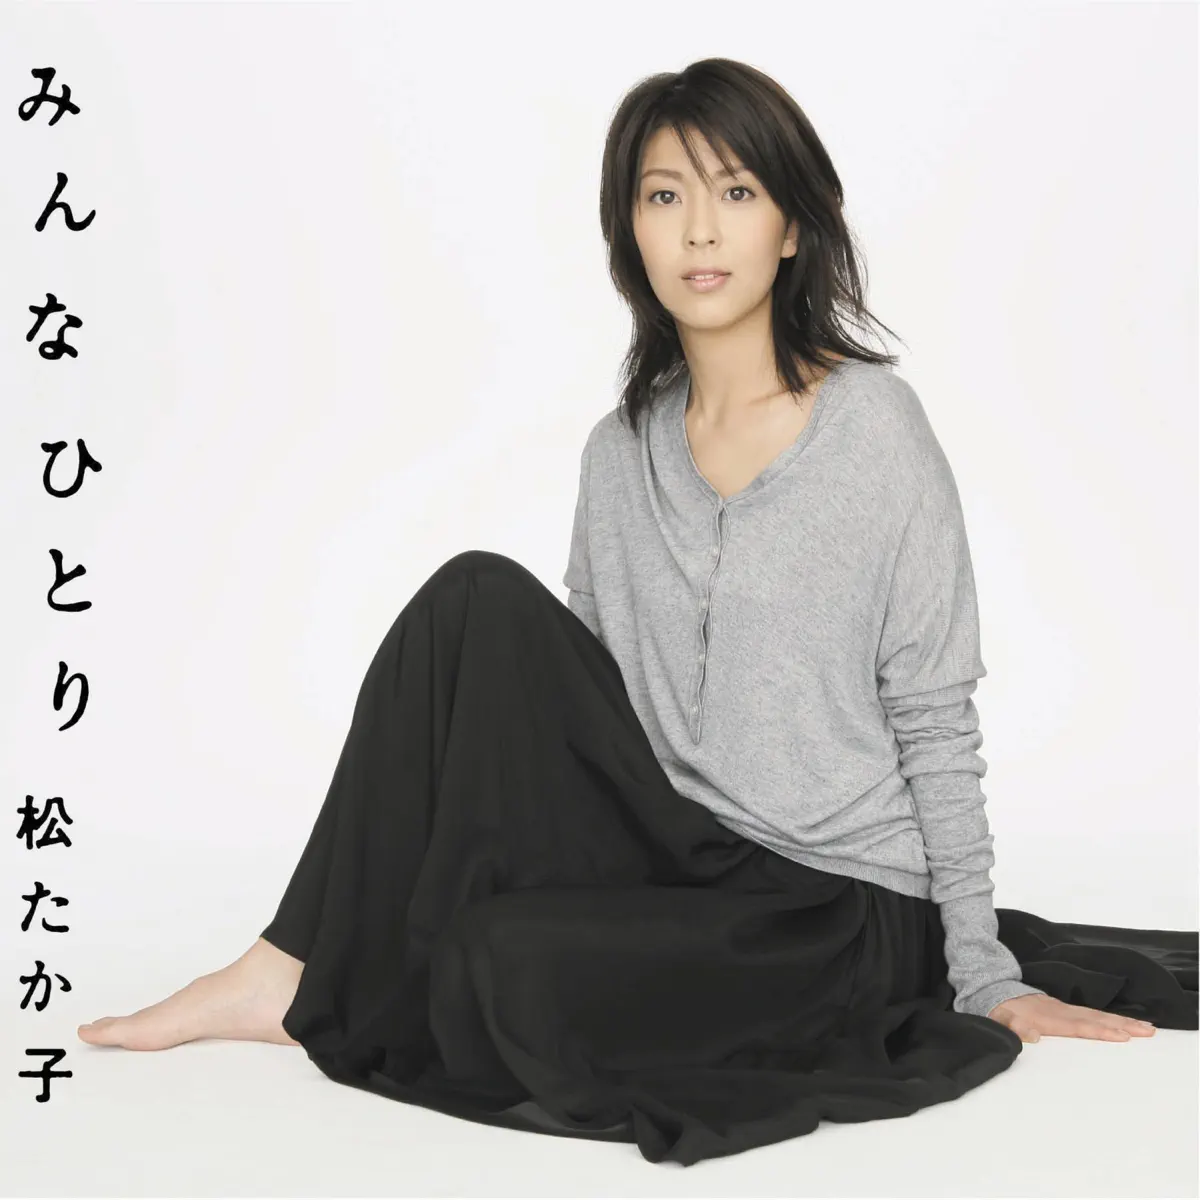 松 たか子 - みんなひとり - EP (2006) [iTunes Plus AAC M4A]-新房子